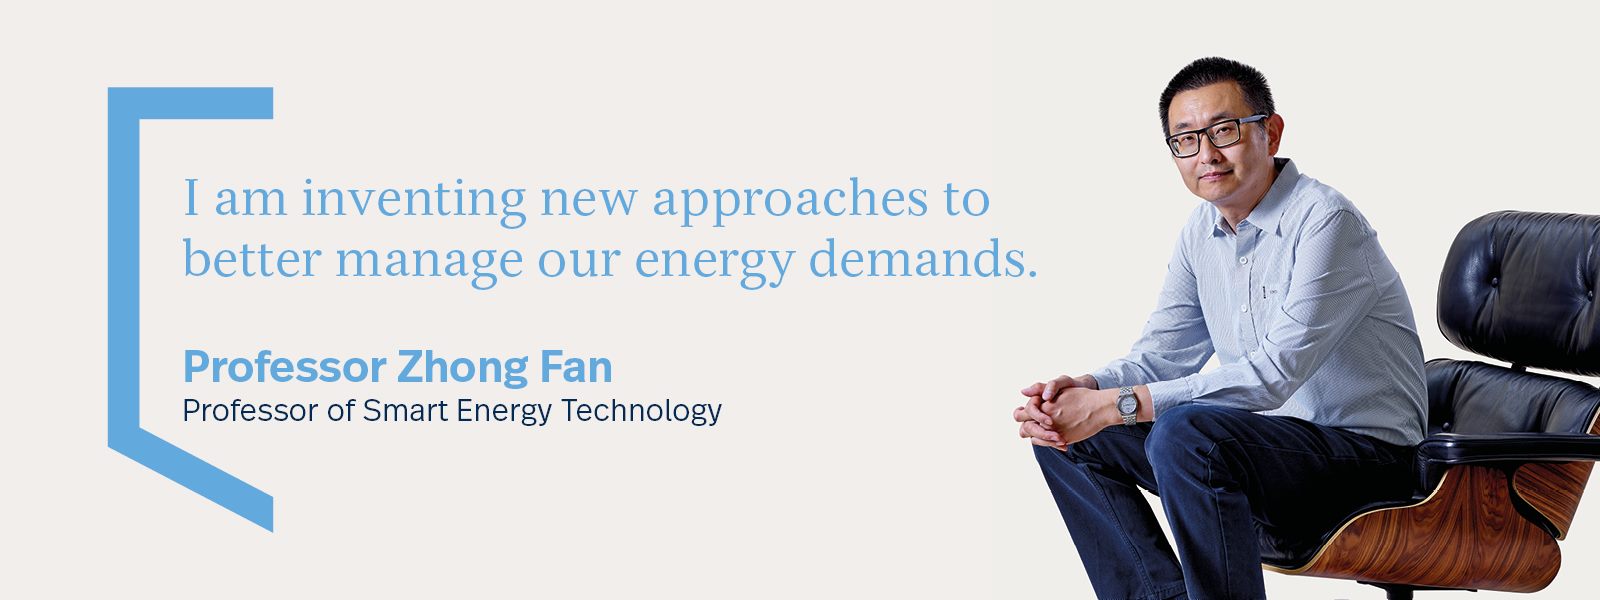 Professor Zhong Fan, Professor of Smart Energy Technology